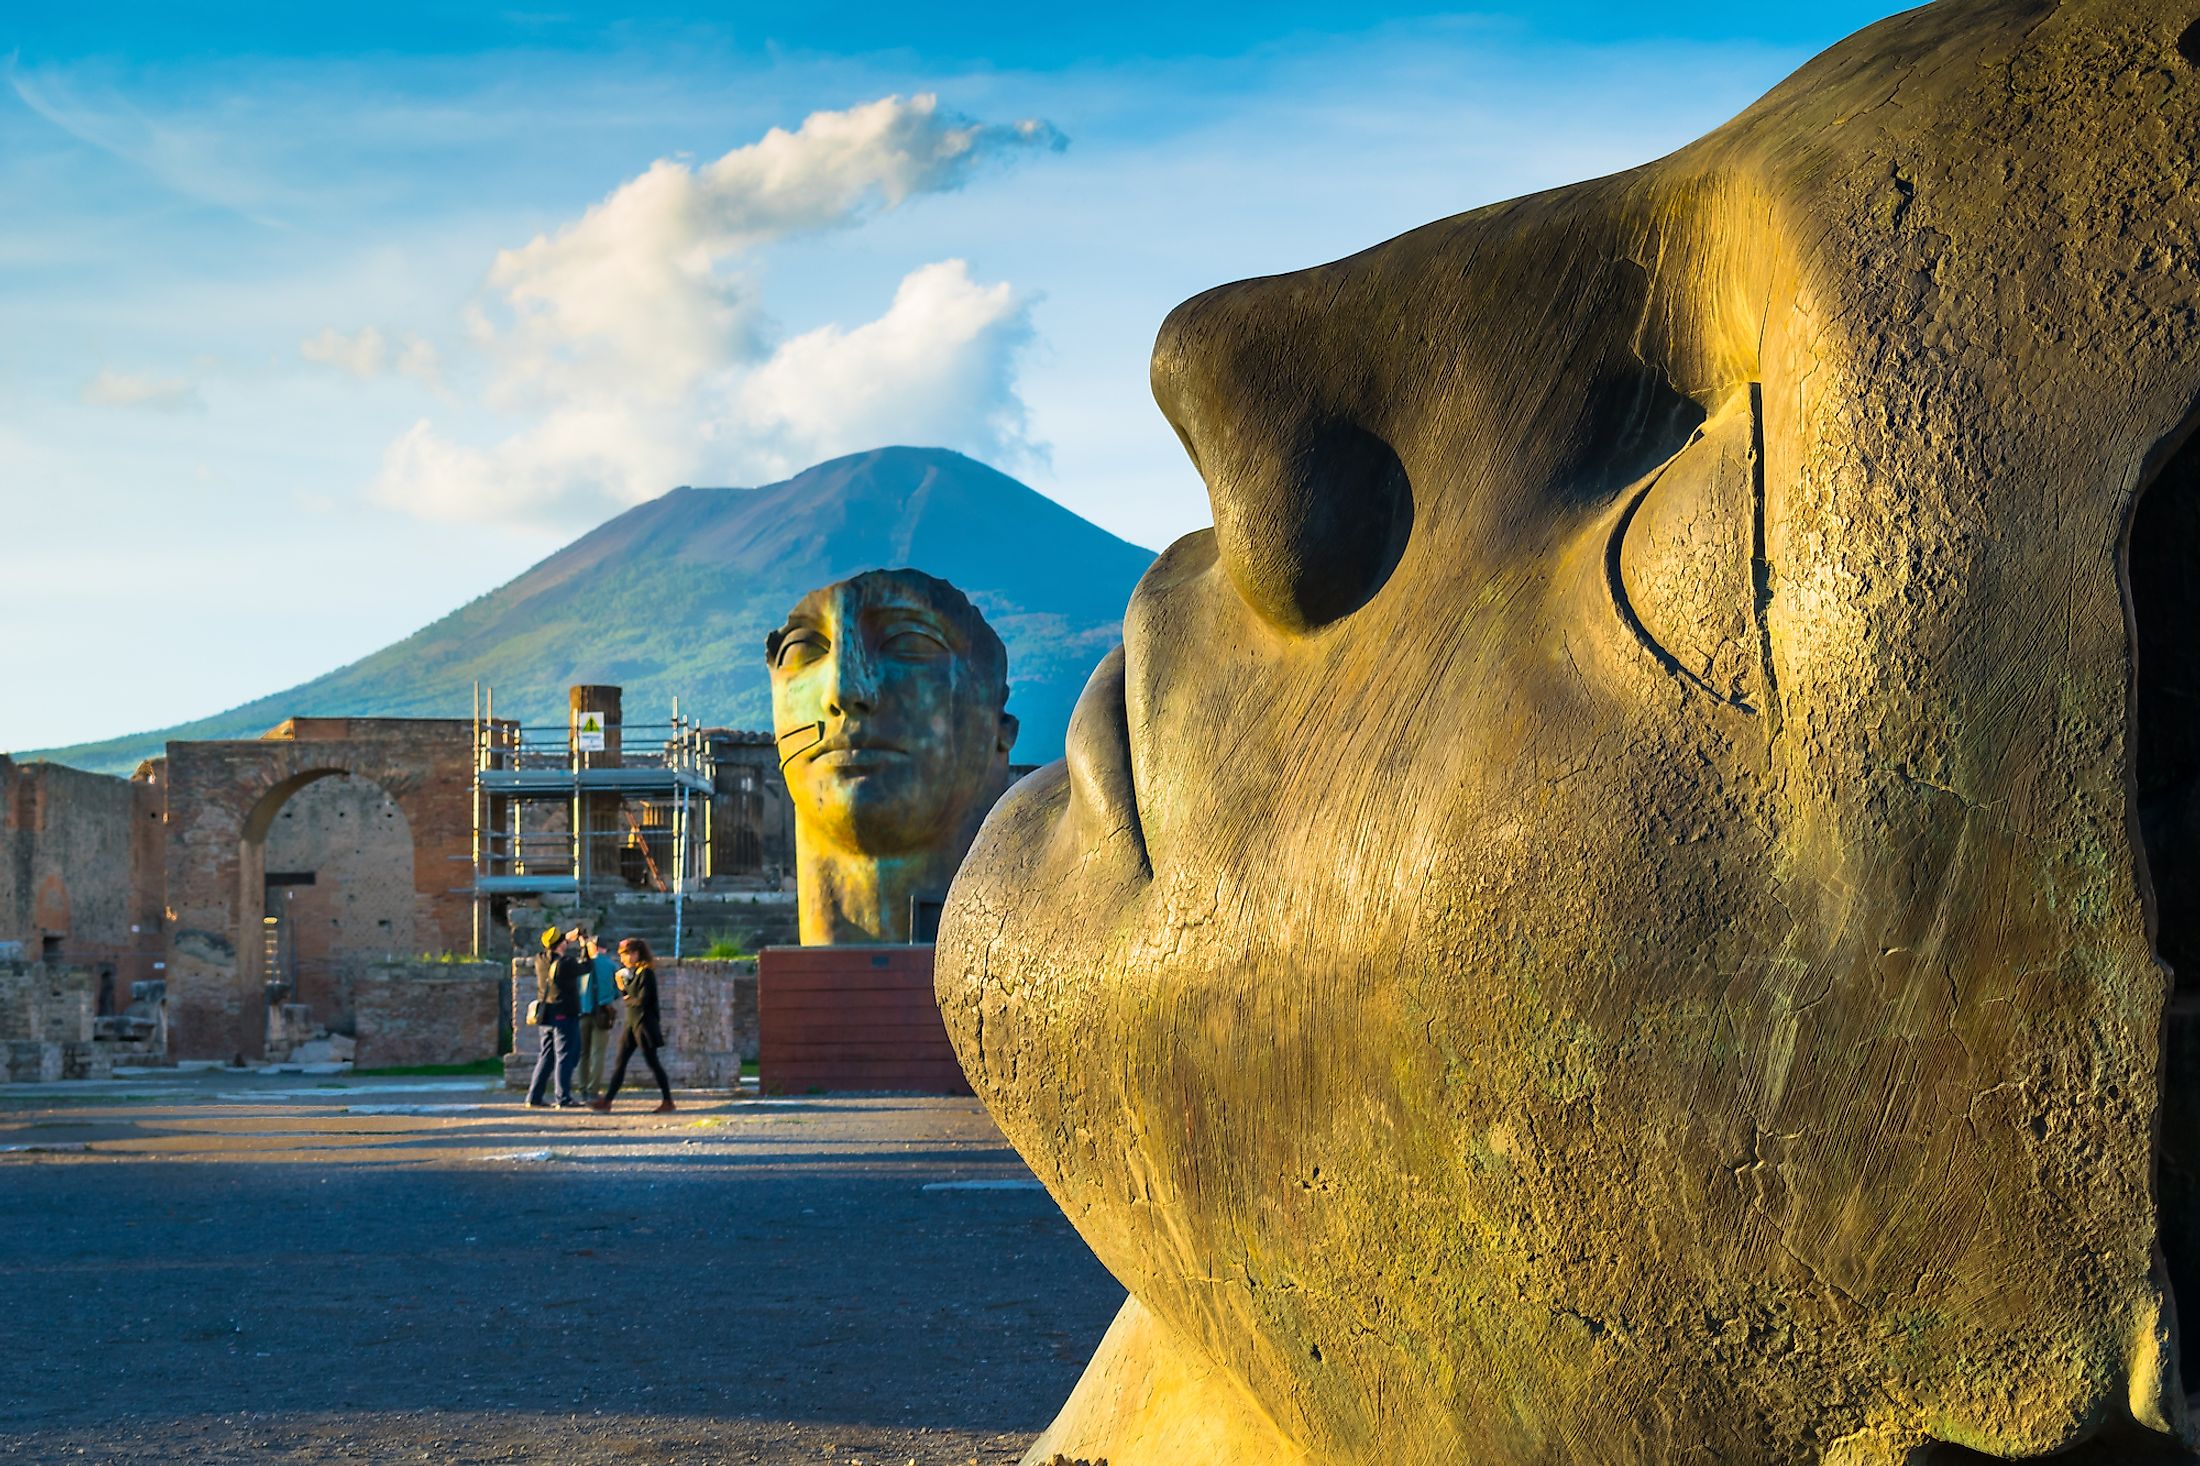 Pompeii, Italy. Editorial credit: Nido Huebl / Shutterstock.com